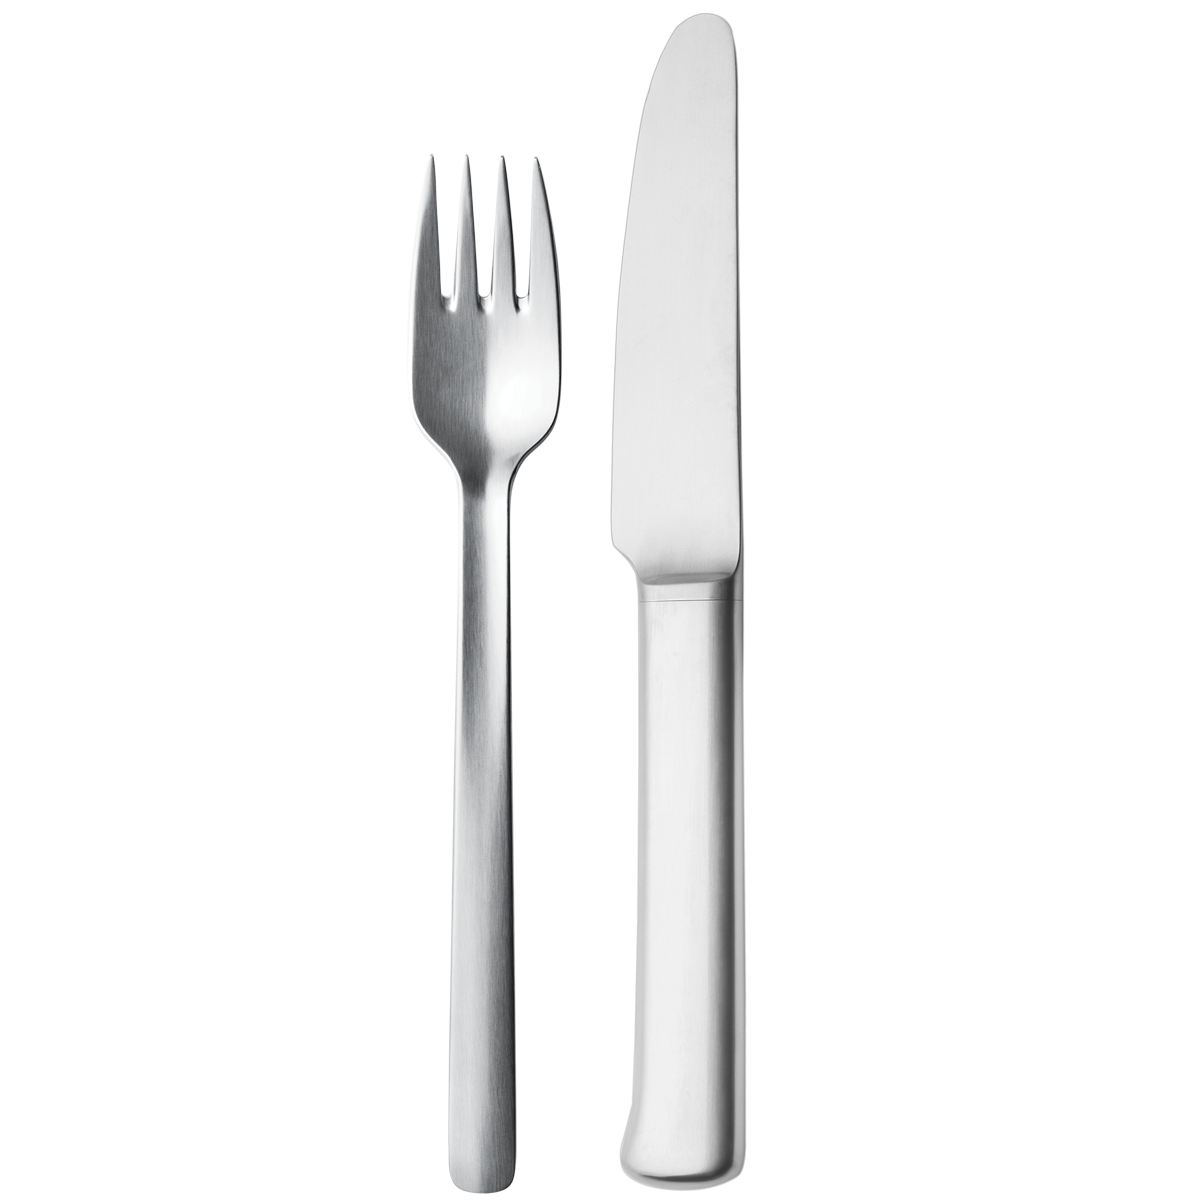 dinner clipart plate utensil